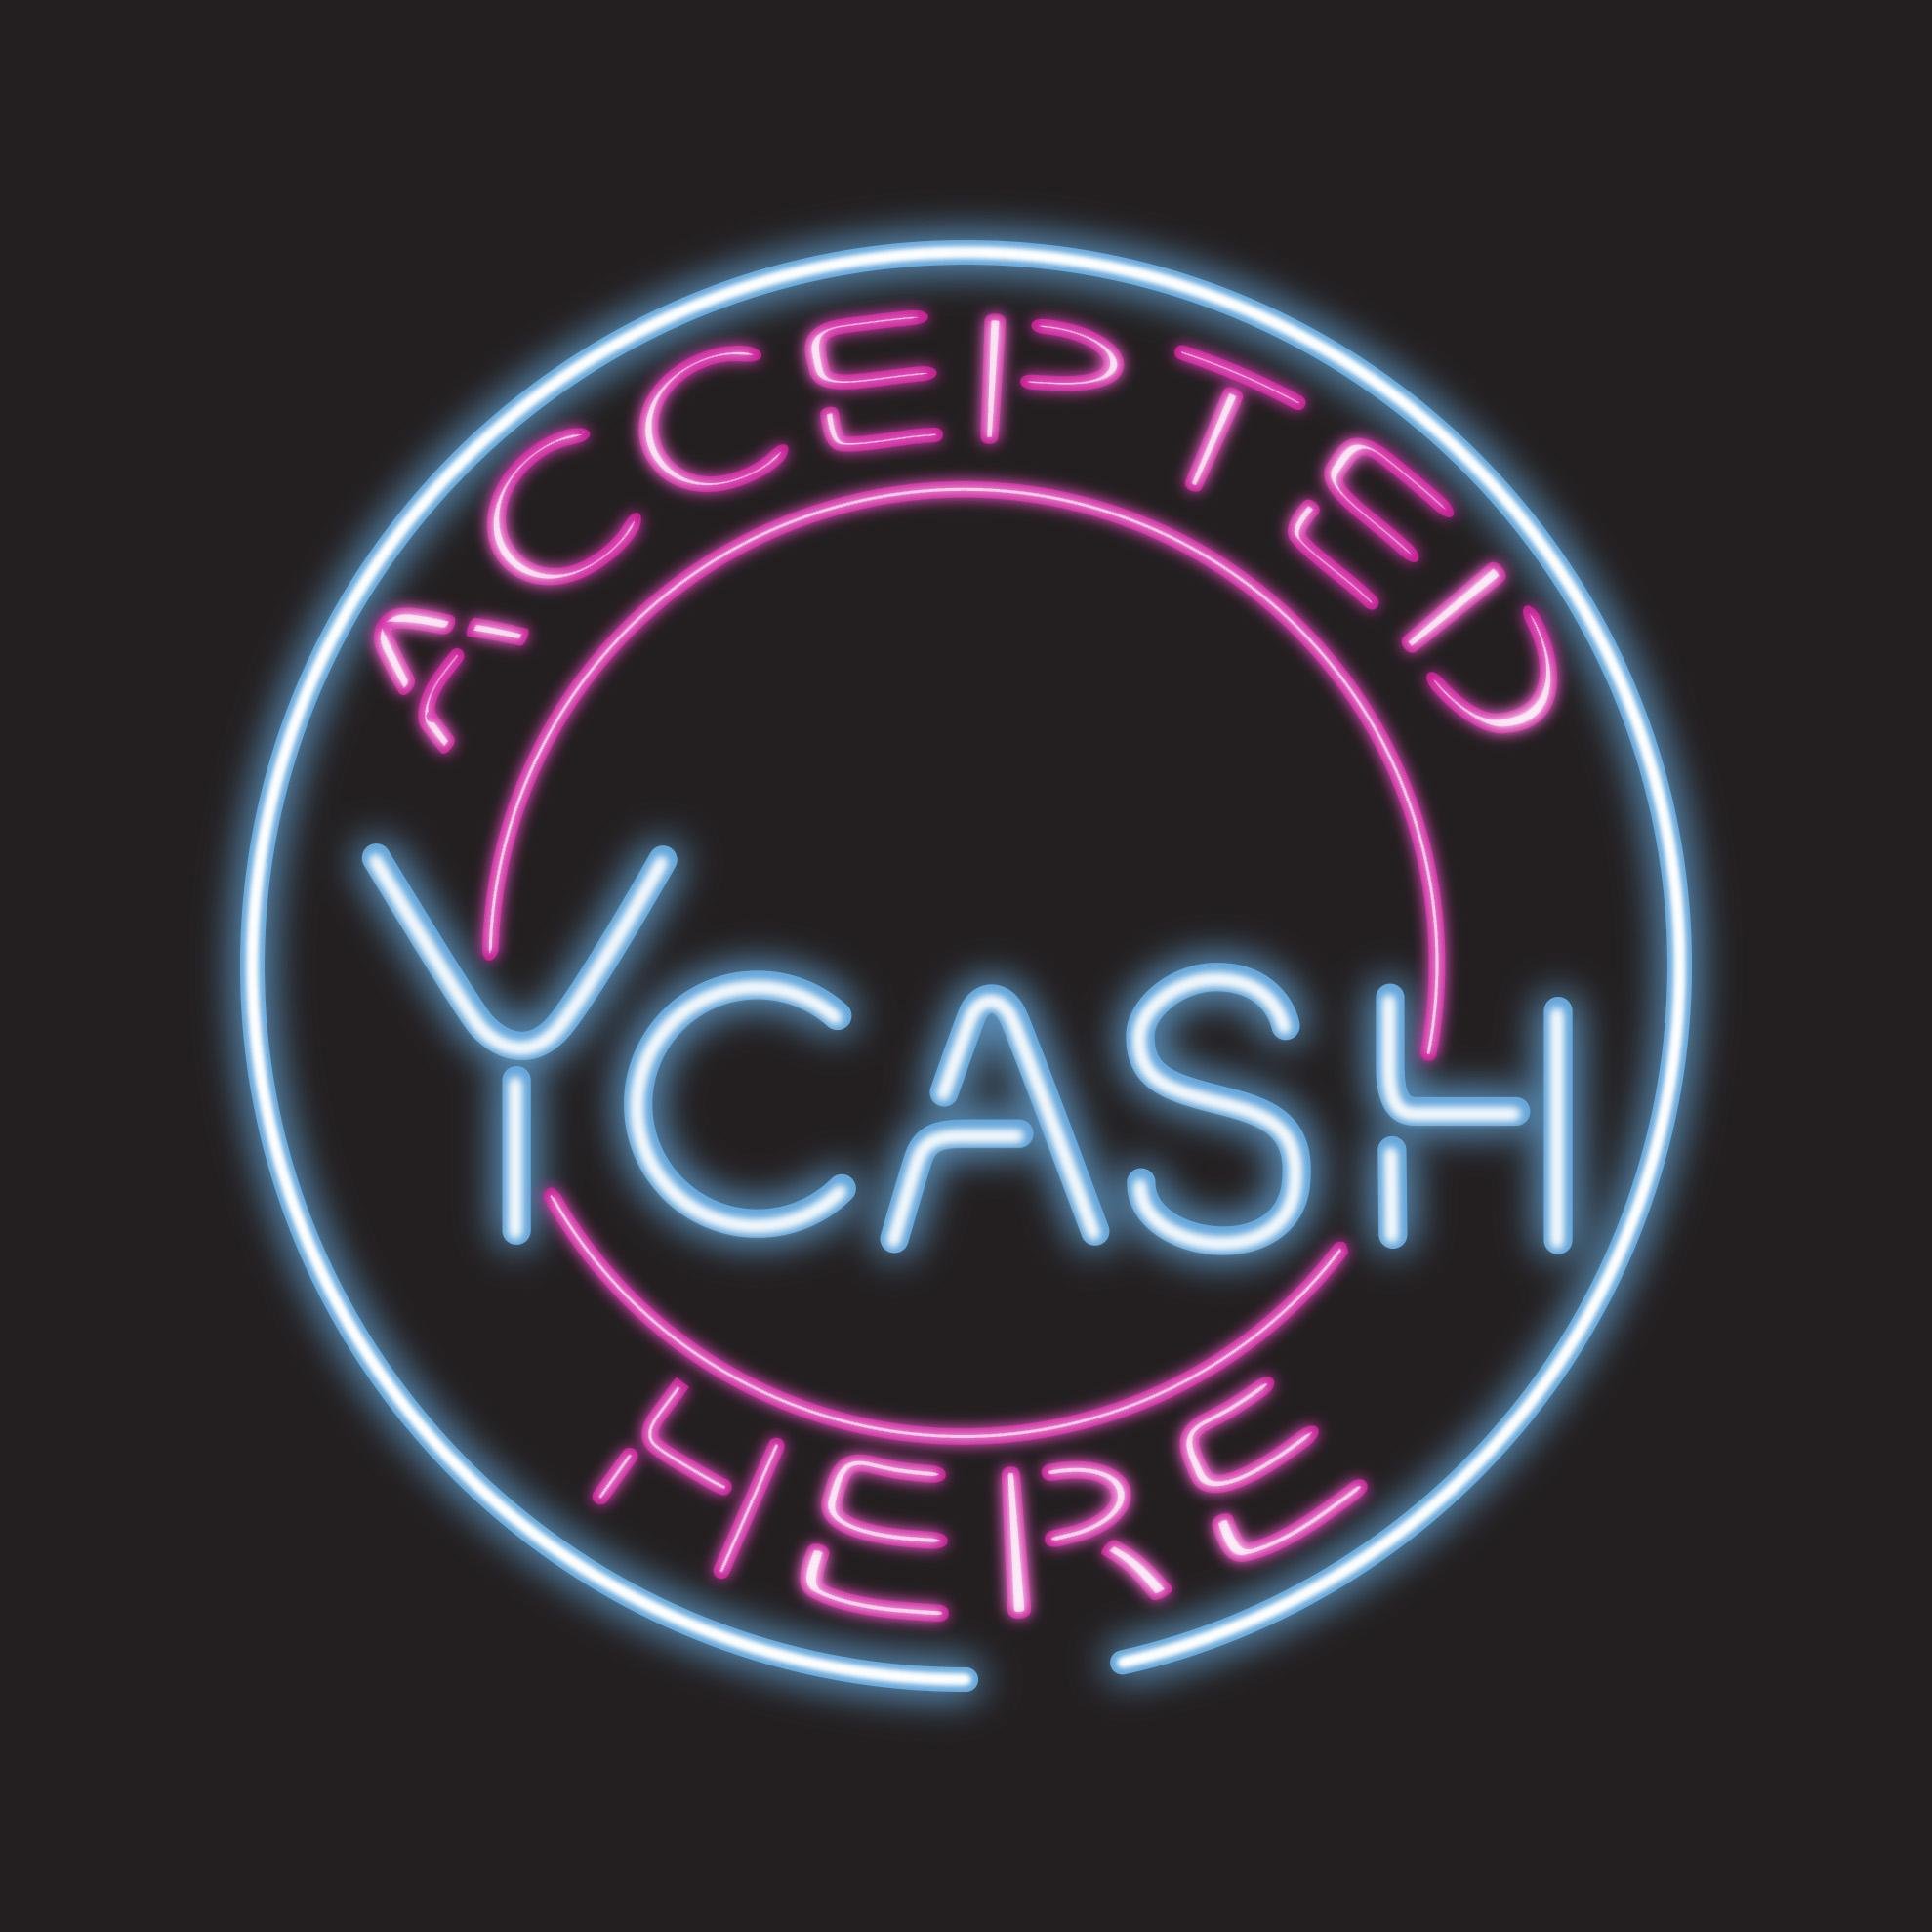 Ycash logo